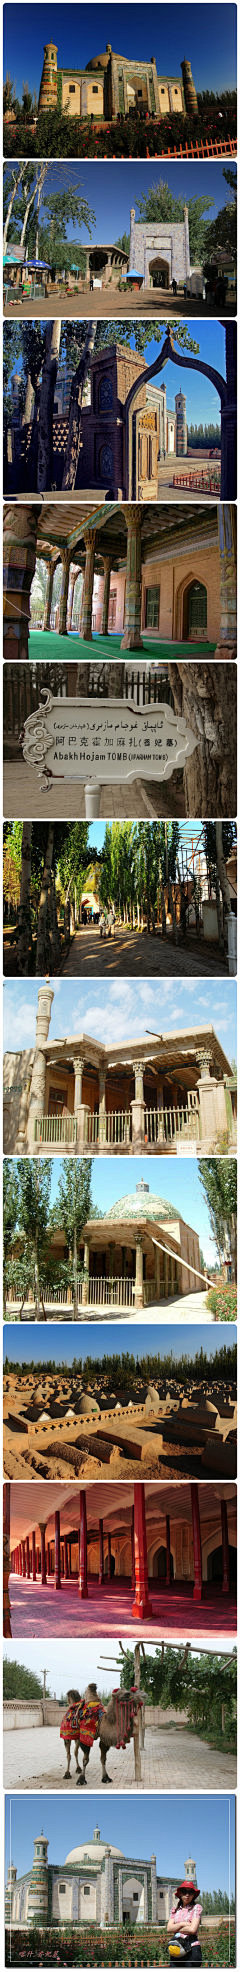 新疆喀什---香妃墓